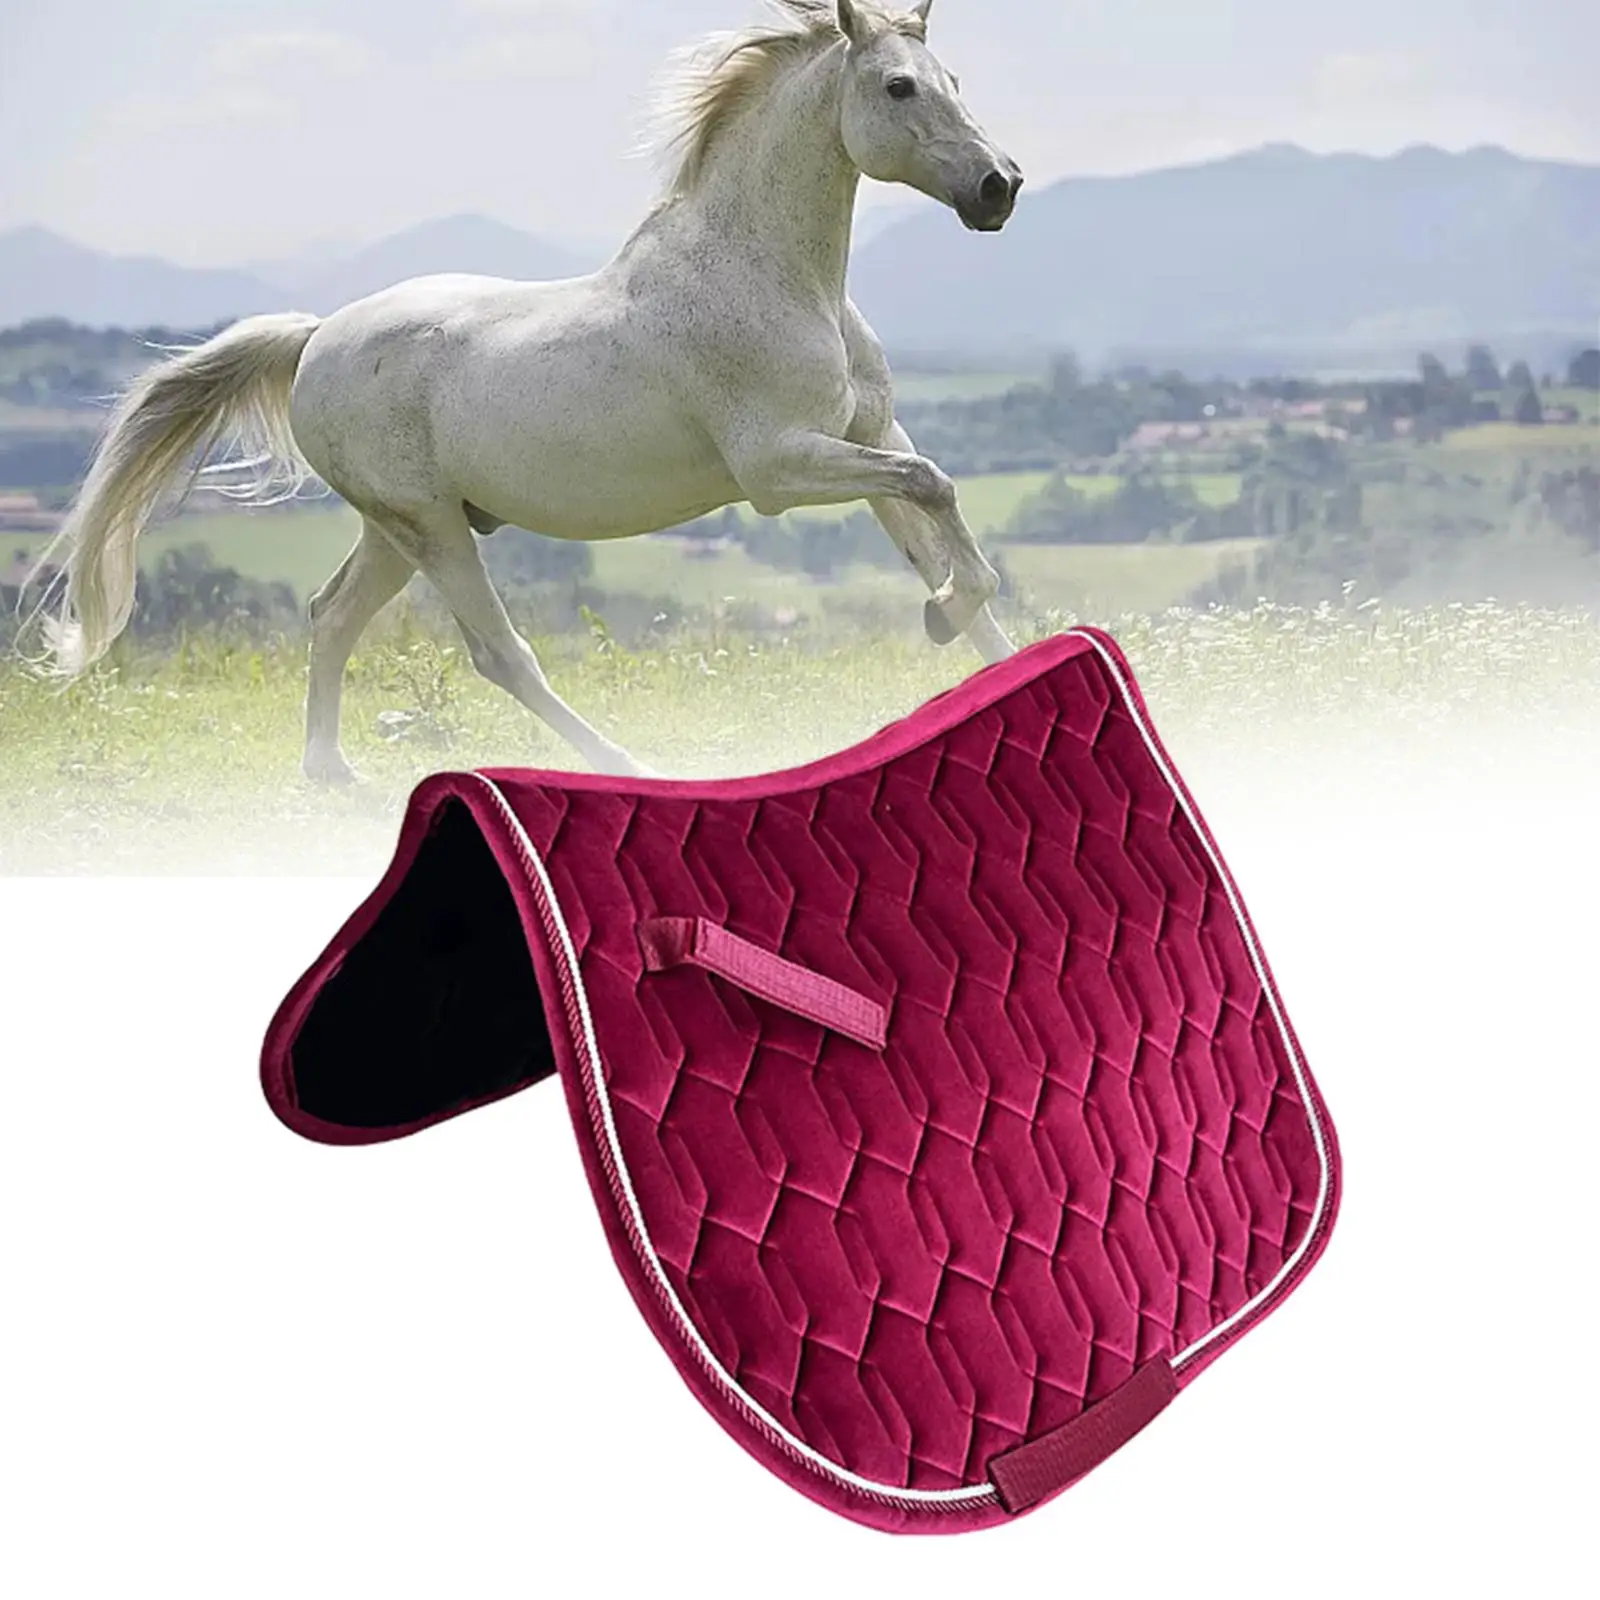 

Коврик для седла лошади, утолщенное оборудование для верховой езды в западном стиле, дышащая подушка для сиденья, нескользящая подкладка, защитная амортизирующая подушка